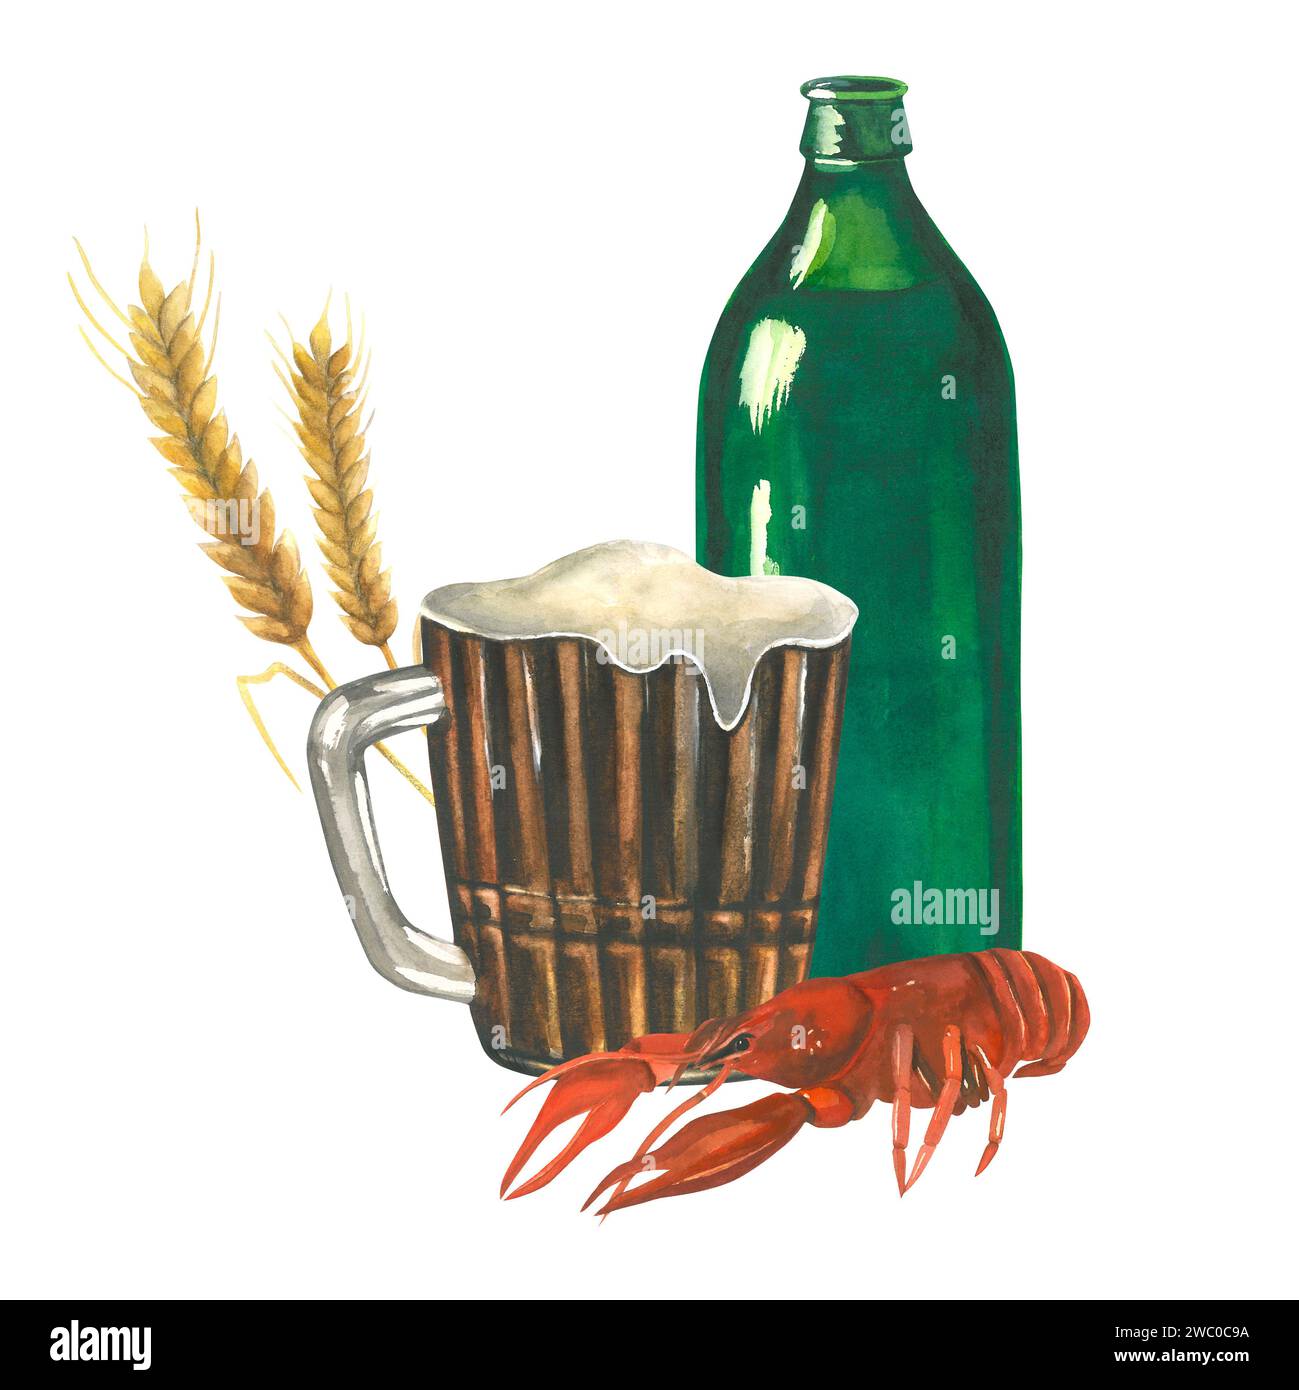 Aquarellkomposition von Illustrationen einer grünen Glasflasche, eines Bechers Bier, gekochter Flusskrebse und eines Ohres Gerste. Isoliert auf weißem Hintergrund Stockfoto